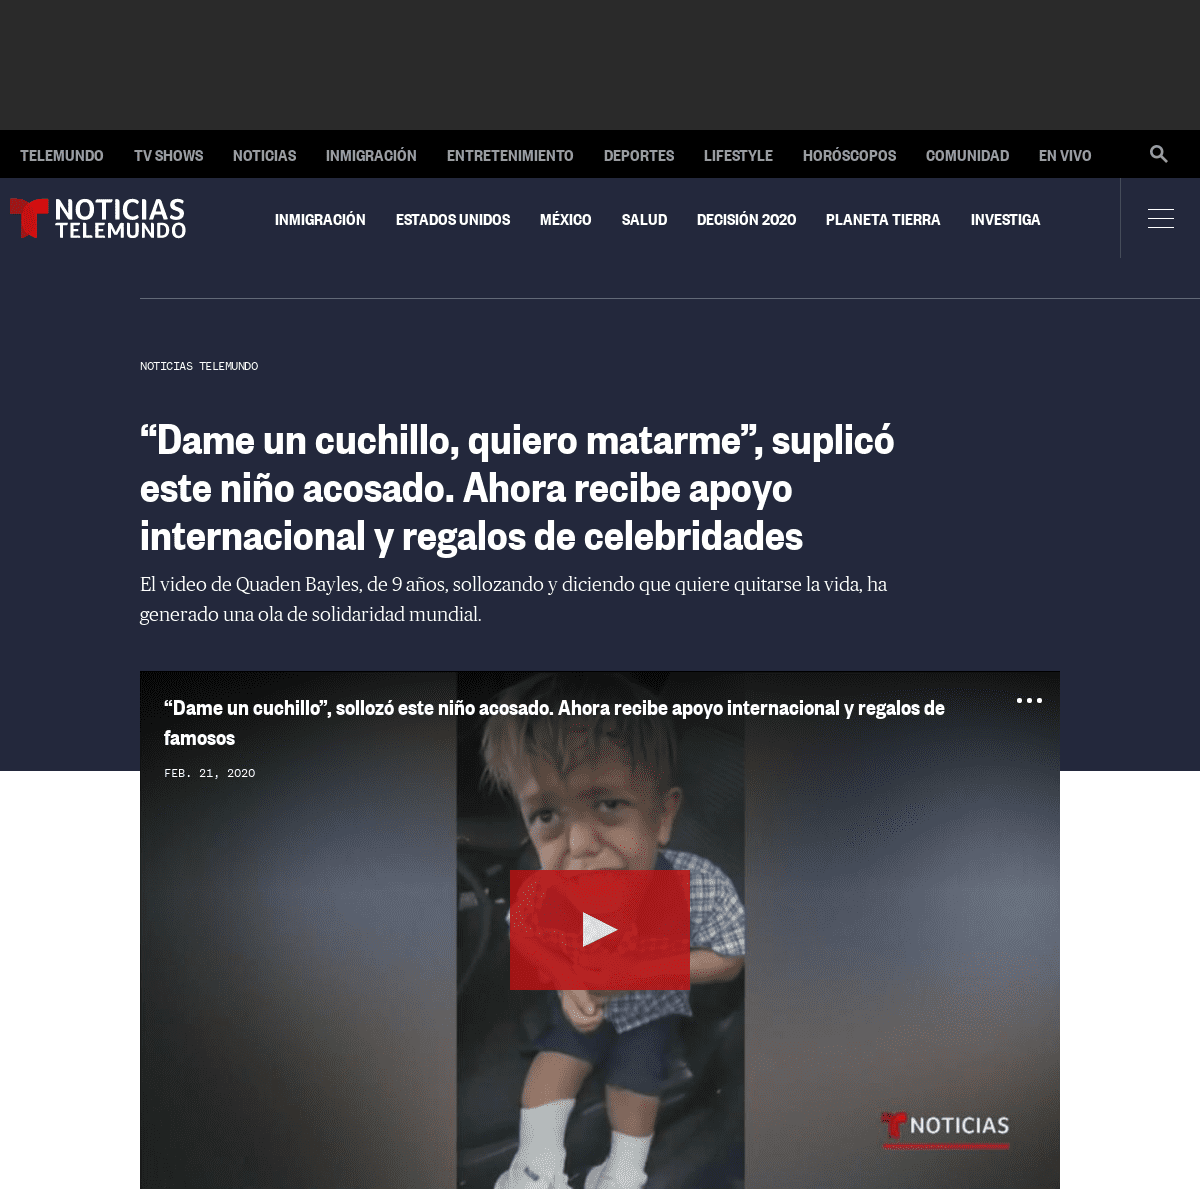 A complete backup of www.telemundo.com/noticias/2020/02/21/dame-un-cuchillo-quiero-matarme-suplico-este-nino-acosado-ahora-recib